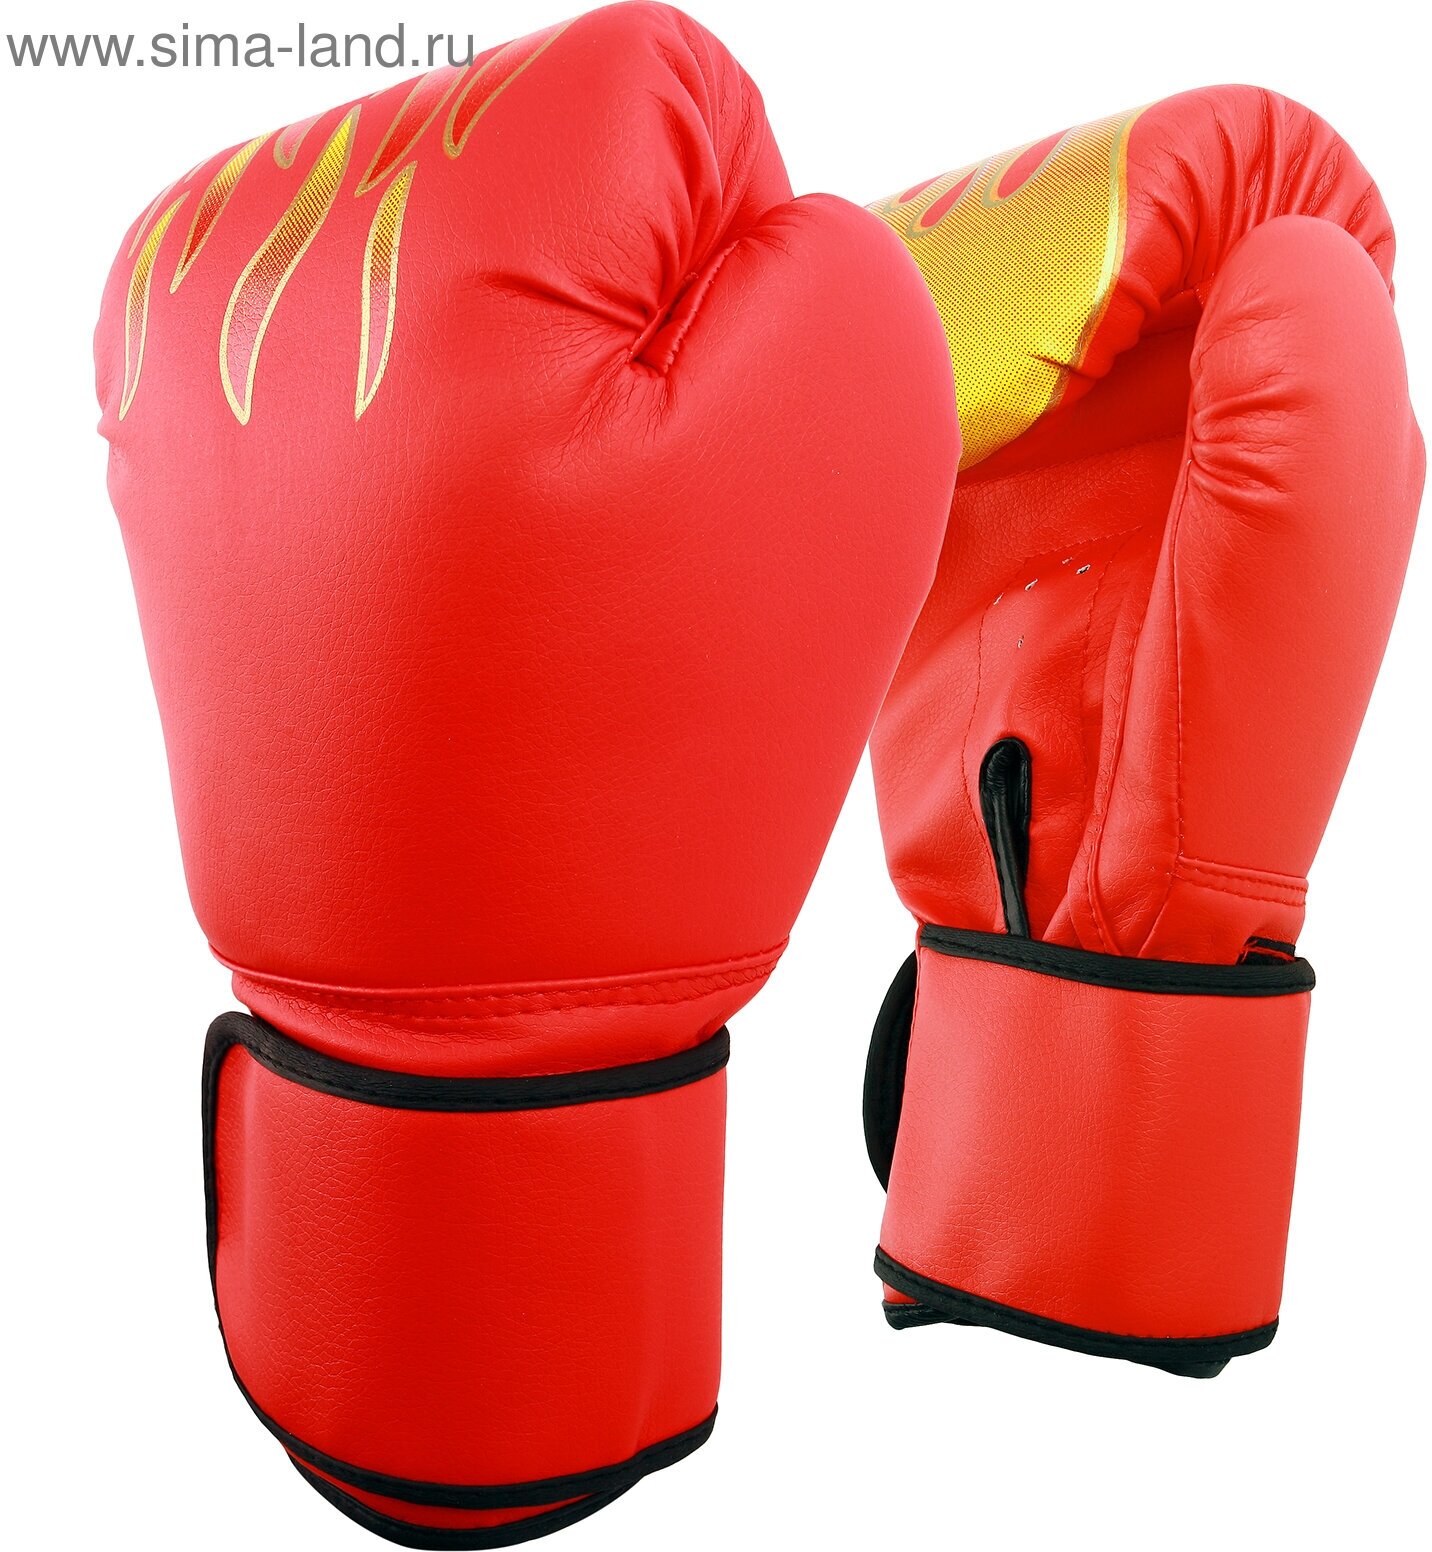 Перчатки боксёрские детские, 6 унций, цвет красный (1шт.)